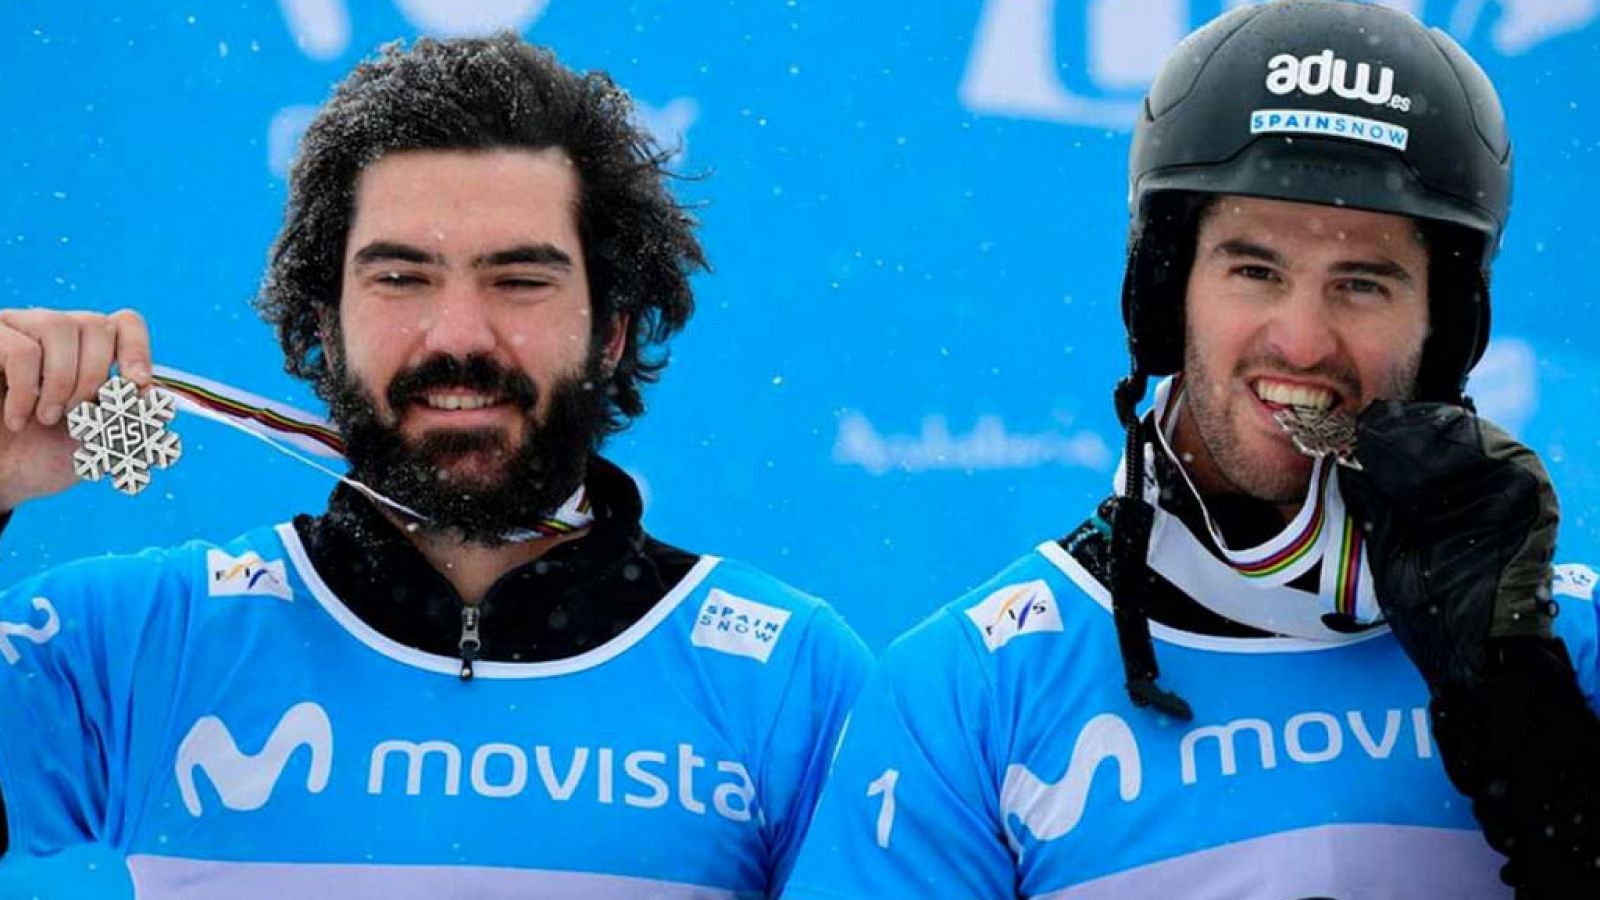 Lucas Eguibar y Regino Hernández, subcampeones del mundo de snowboard.